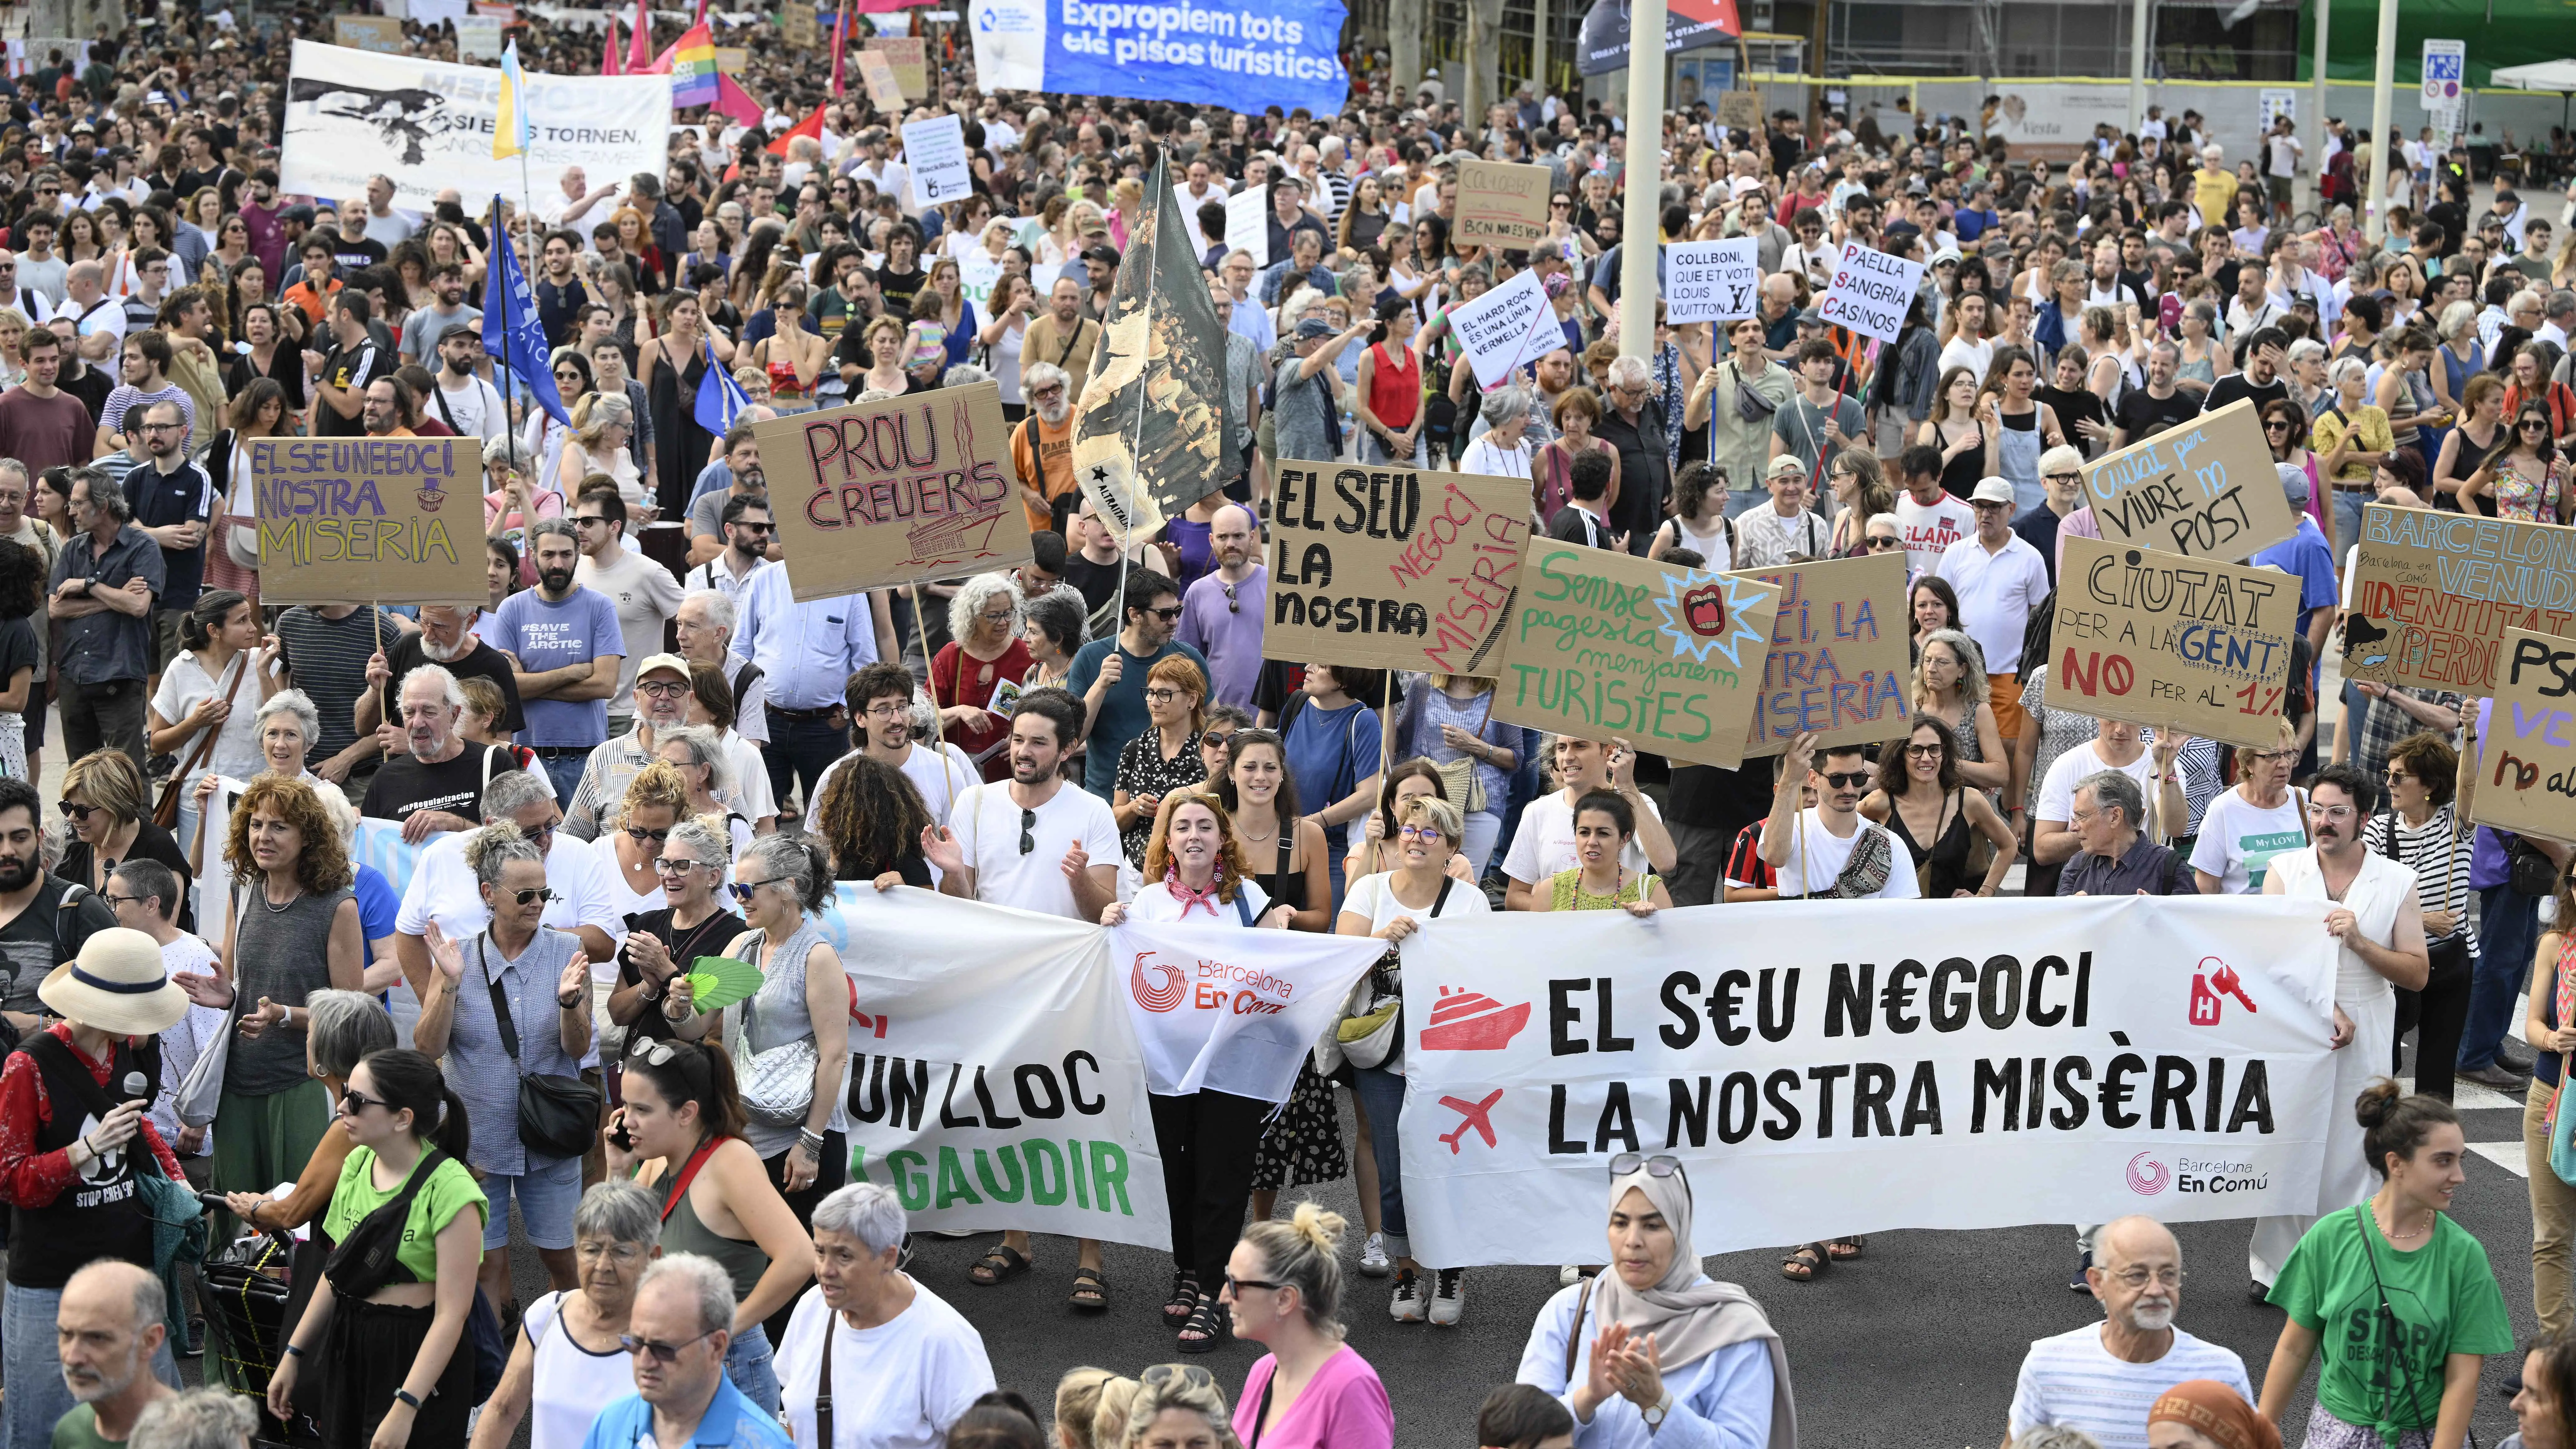 إسبانيا.. "السياحة المفرطة" تُخرج آلاف المتظاهرين إلى شوارع برشلونة